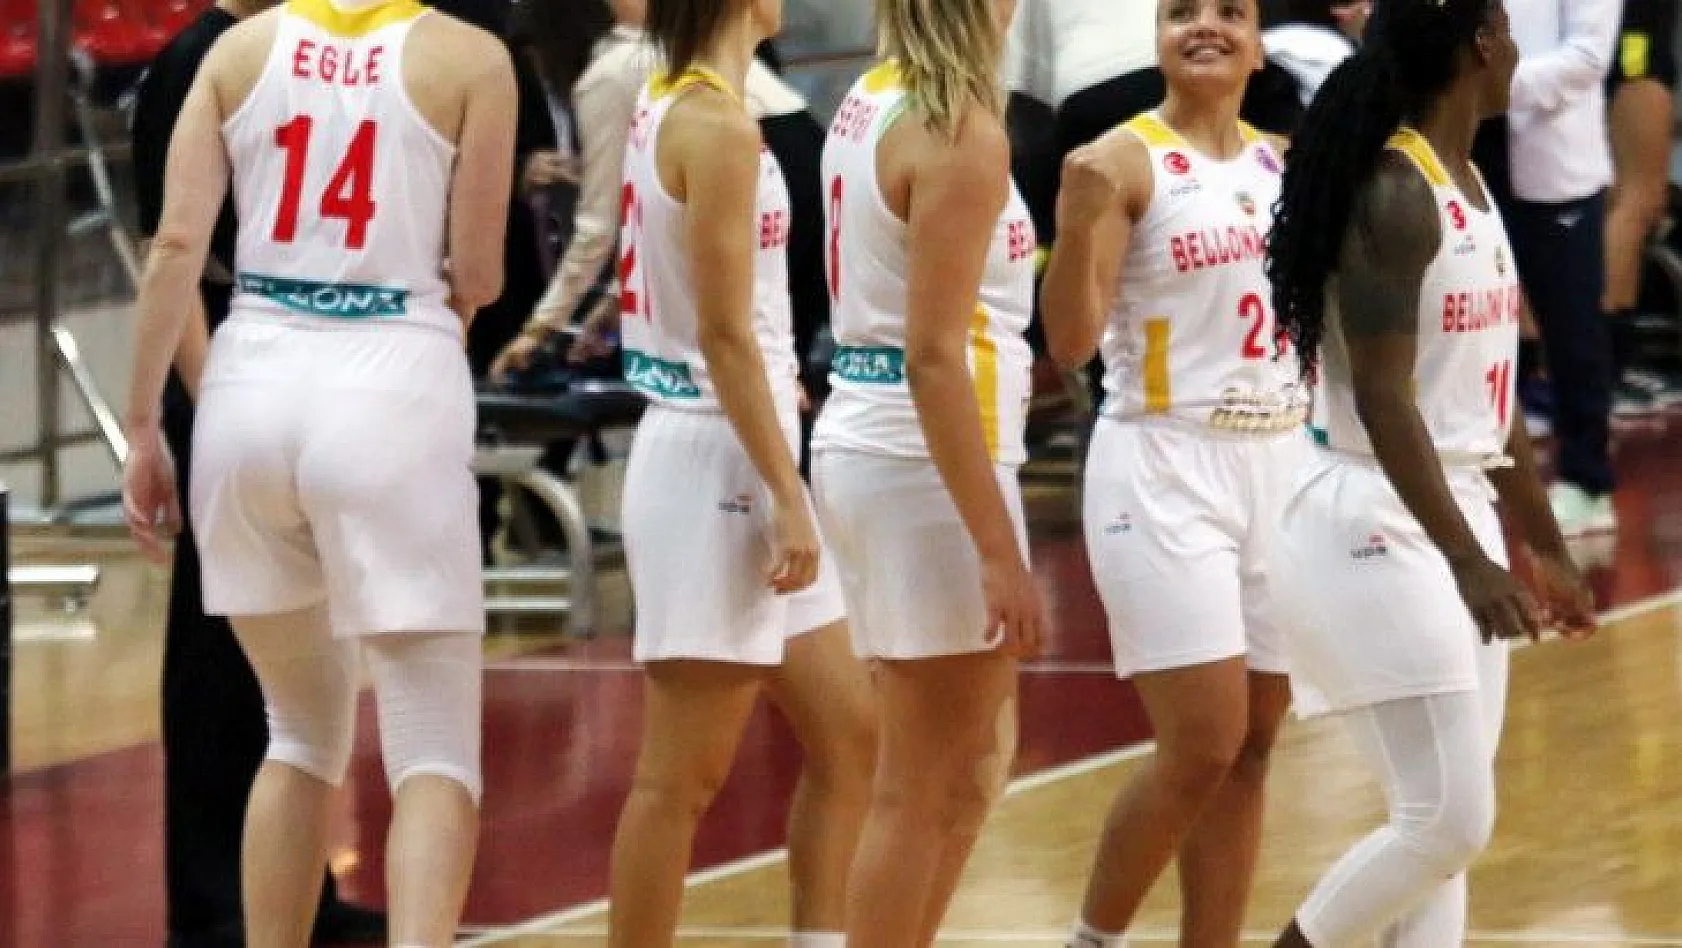 Bellona Kayseri Basketbol fark yedi